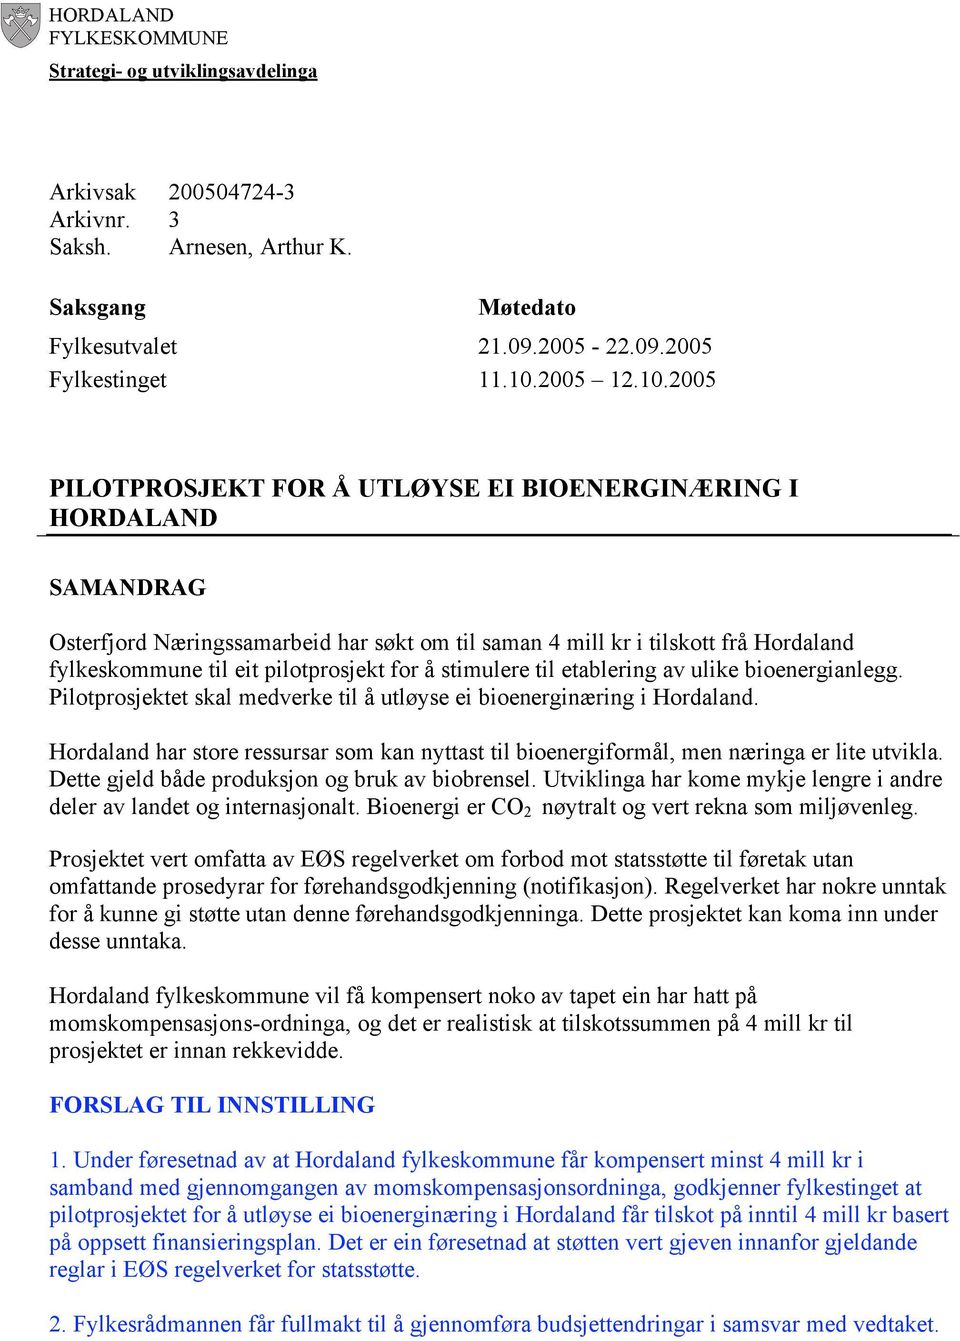 2005 PILOTPROSJEKT FOR Å UTLØYSE EI BIOENERGINÆRING I HORDALAND SAMANDRAG Osterfjord Næringssamarbeid har søkt om til saman 4 mill kr i tilskott frå Hordaland fylkeskommune til eit pilotprosjekt for